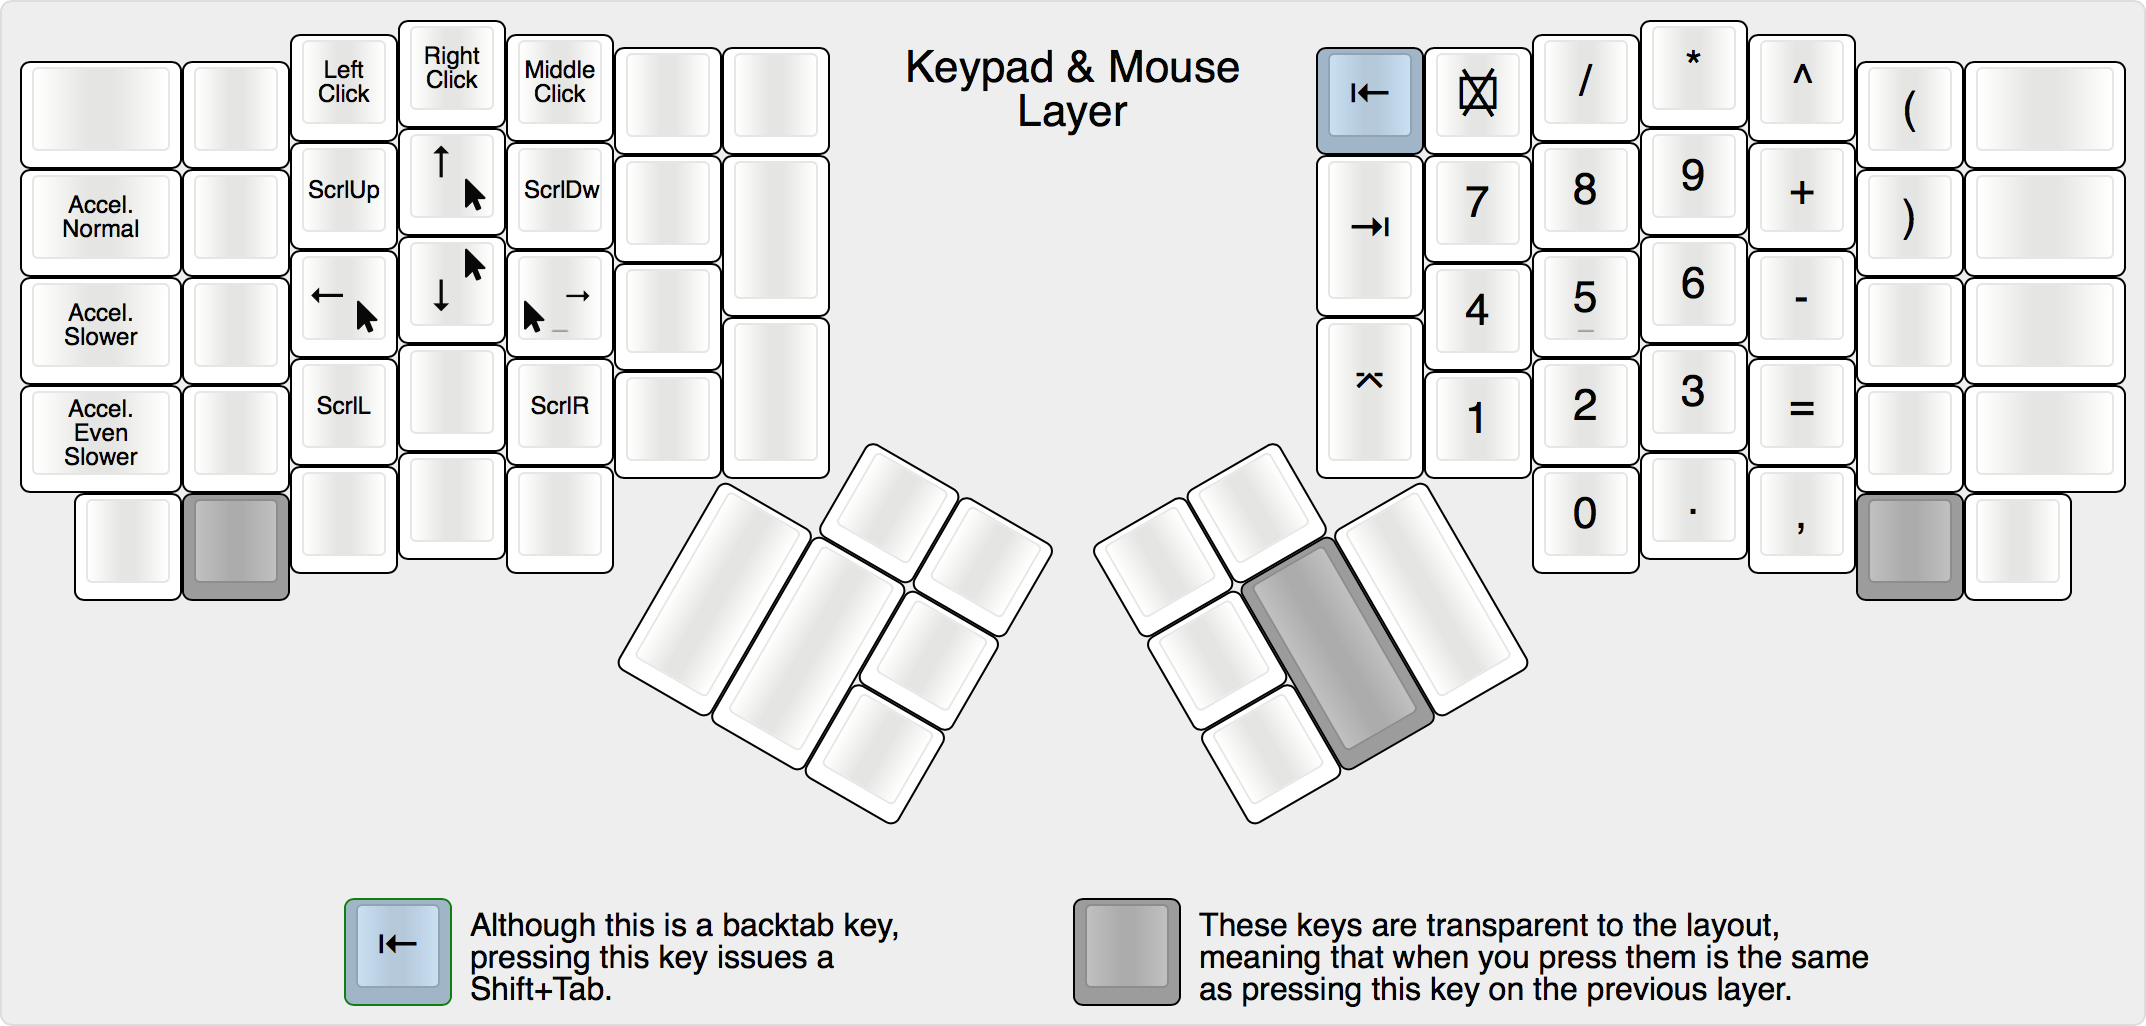 Keypad & Mouse Layout